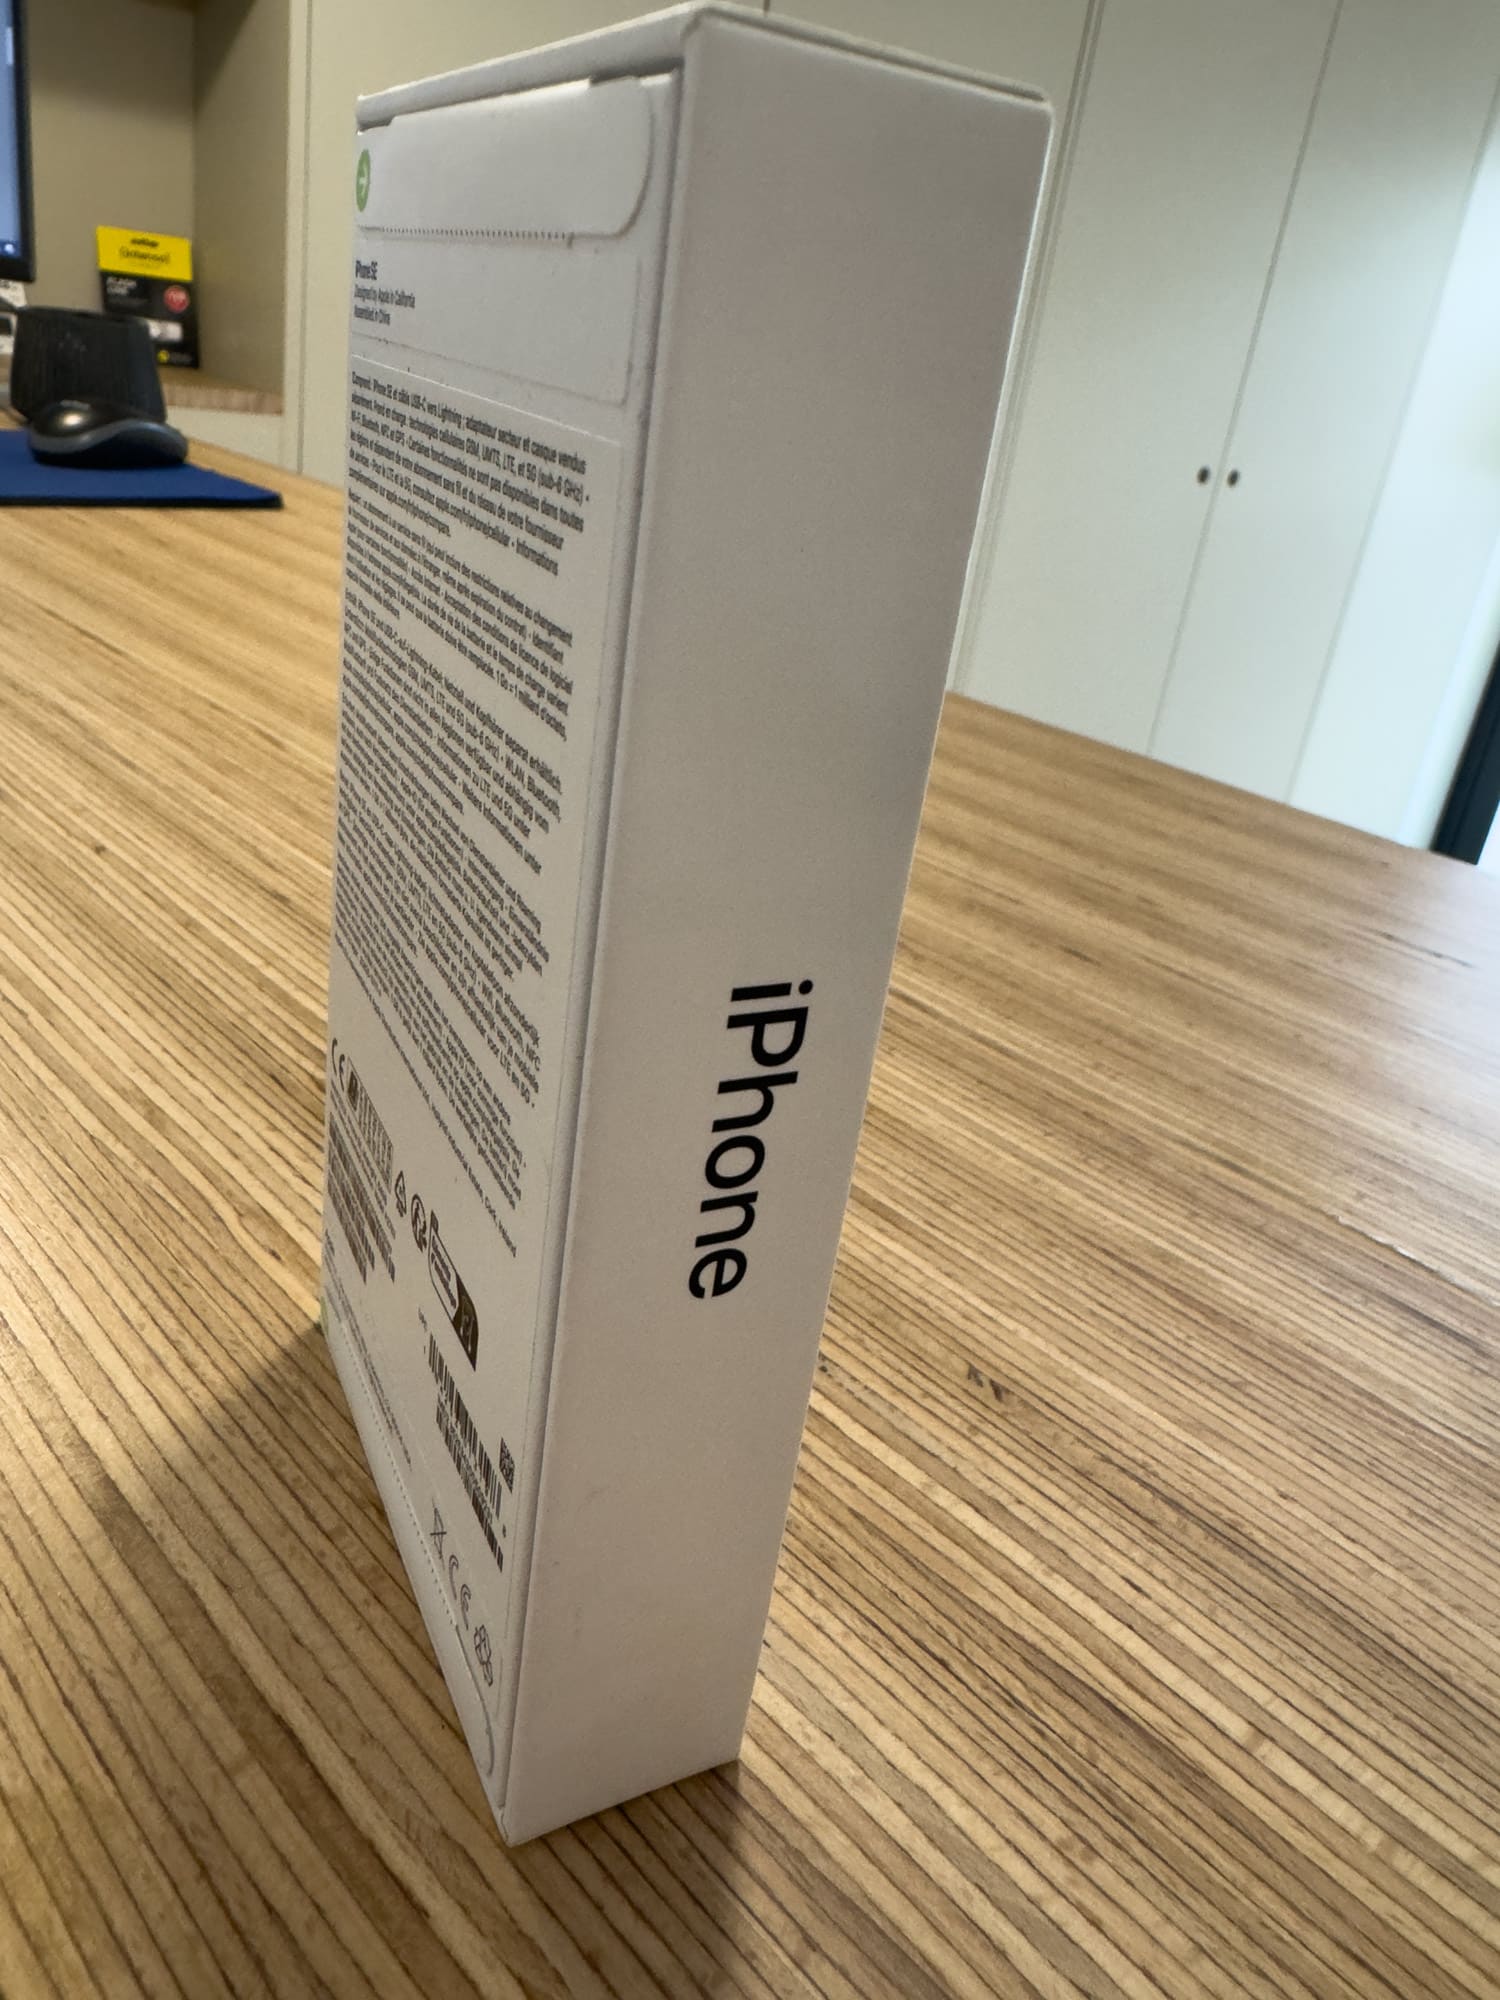 Boîte d'iPhone neuf sur table en bois.